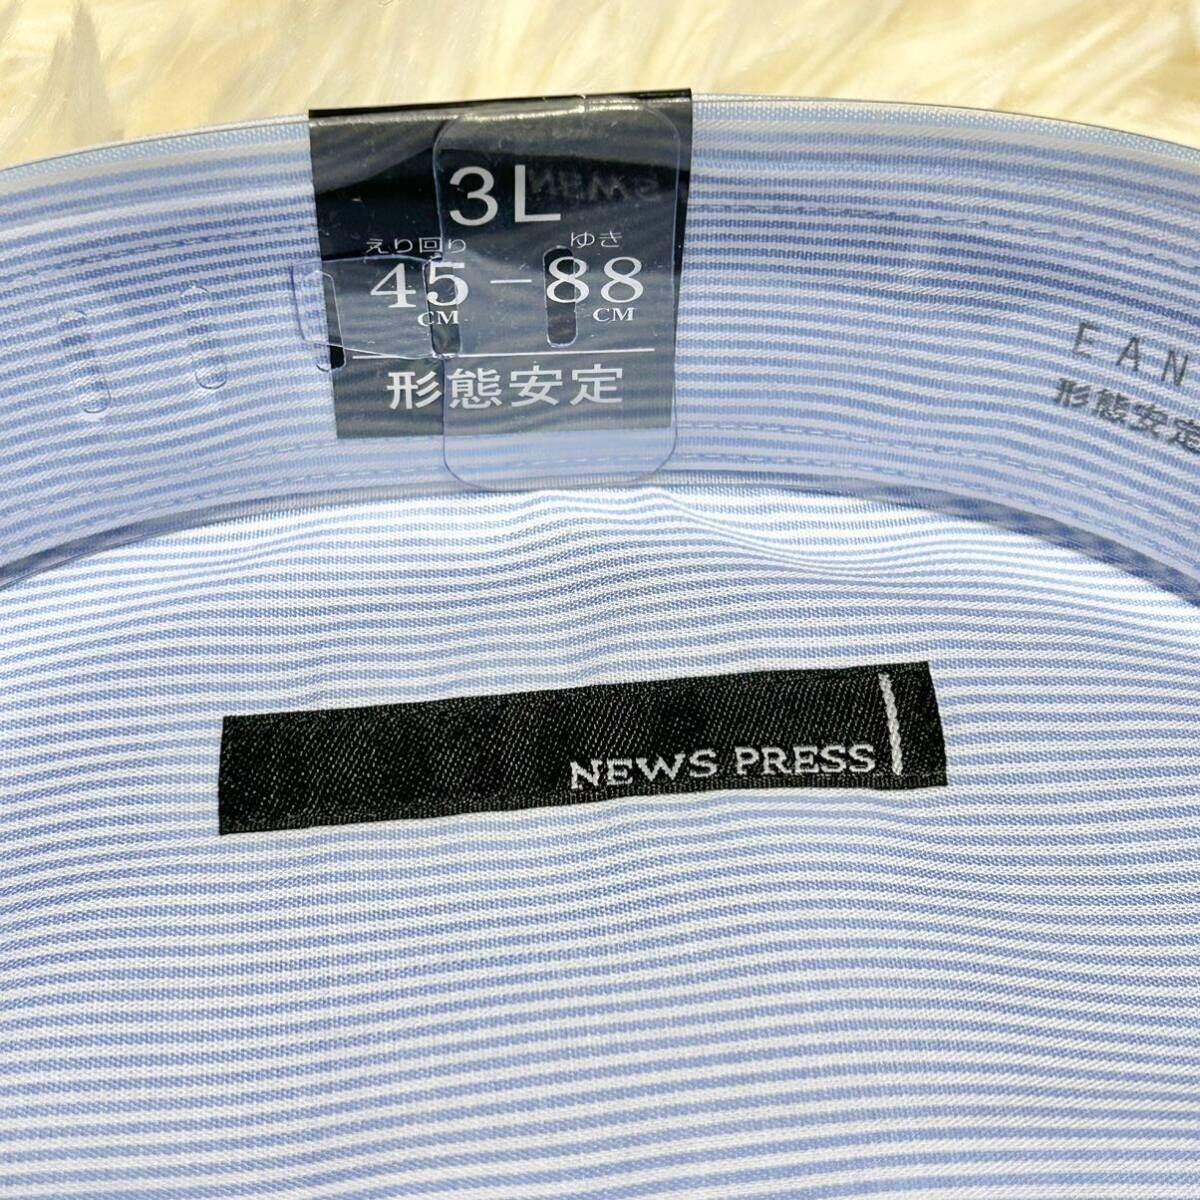 NEWSPRESSワイシャツ シャツ ストライプ 3L 45-88の画像2